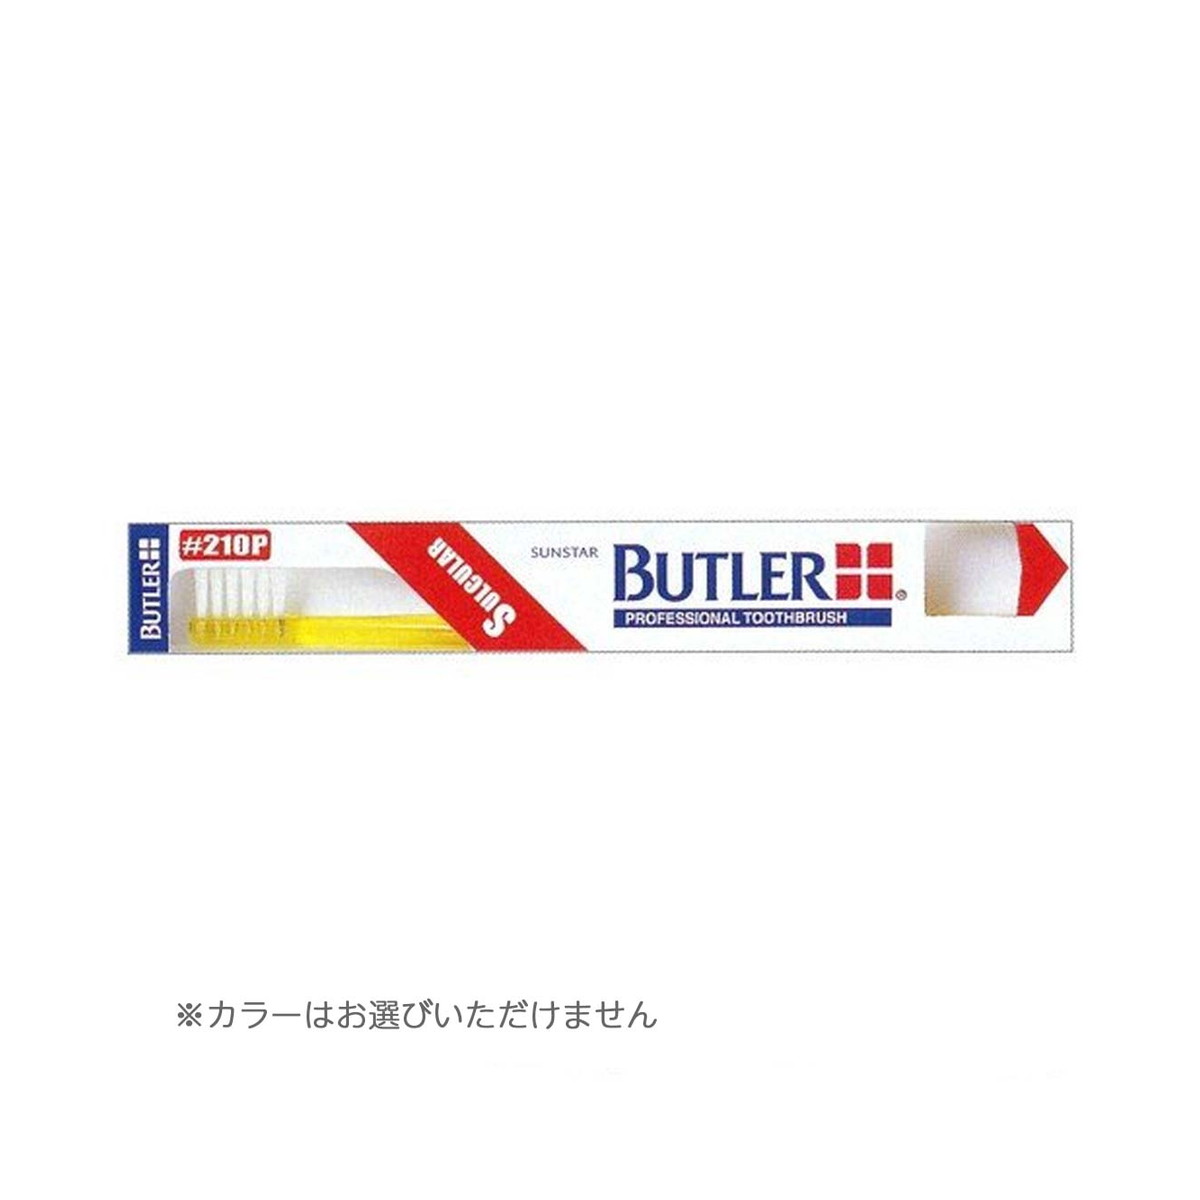 70449円 【​限​定​販​売​】 70449円 贈与 サンスター BUTLER バトラー 歯ブラシ #210P 歯肉溝用 ※色は選べません